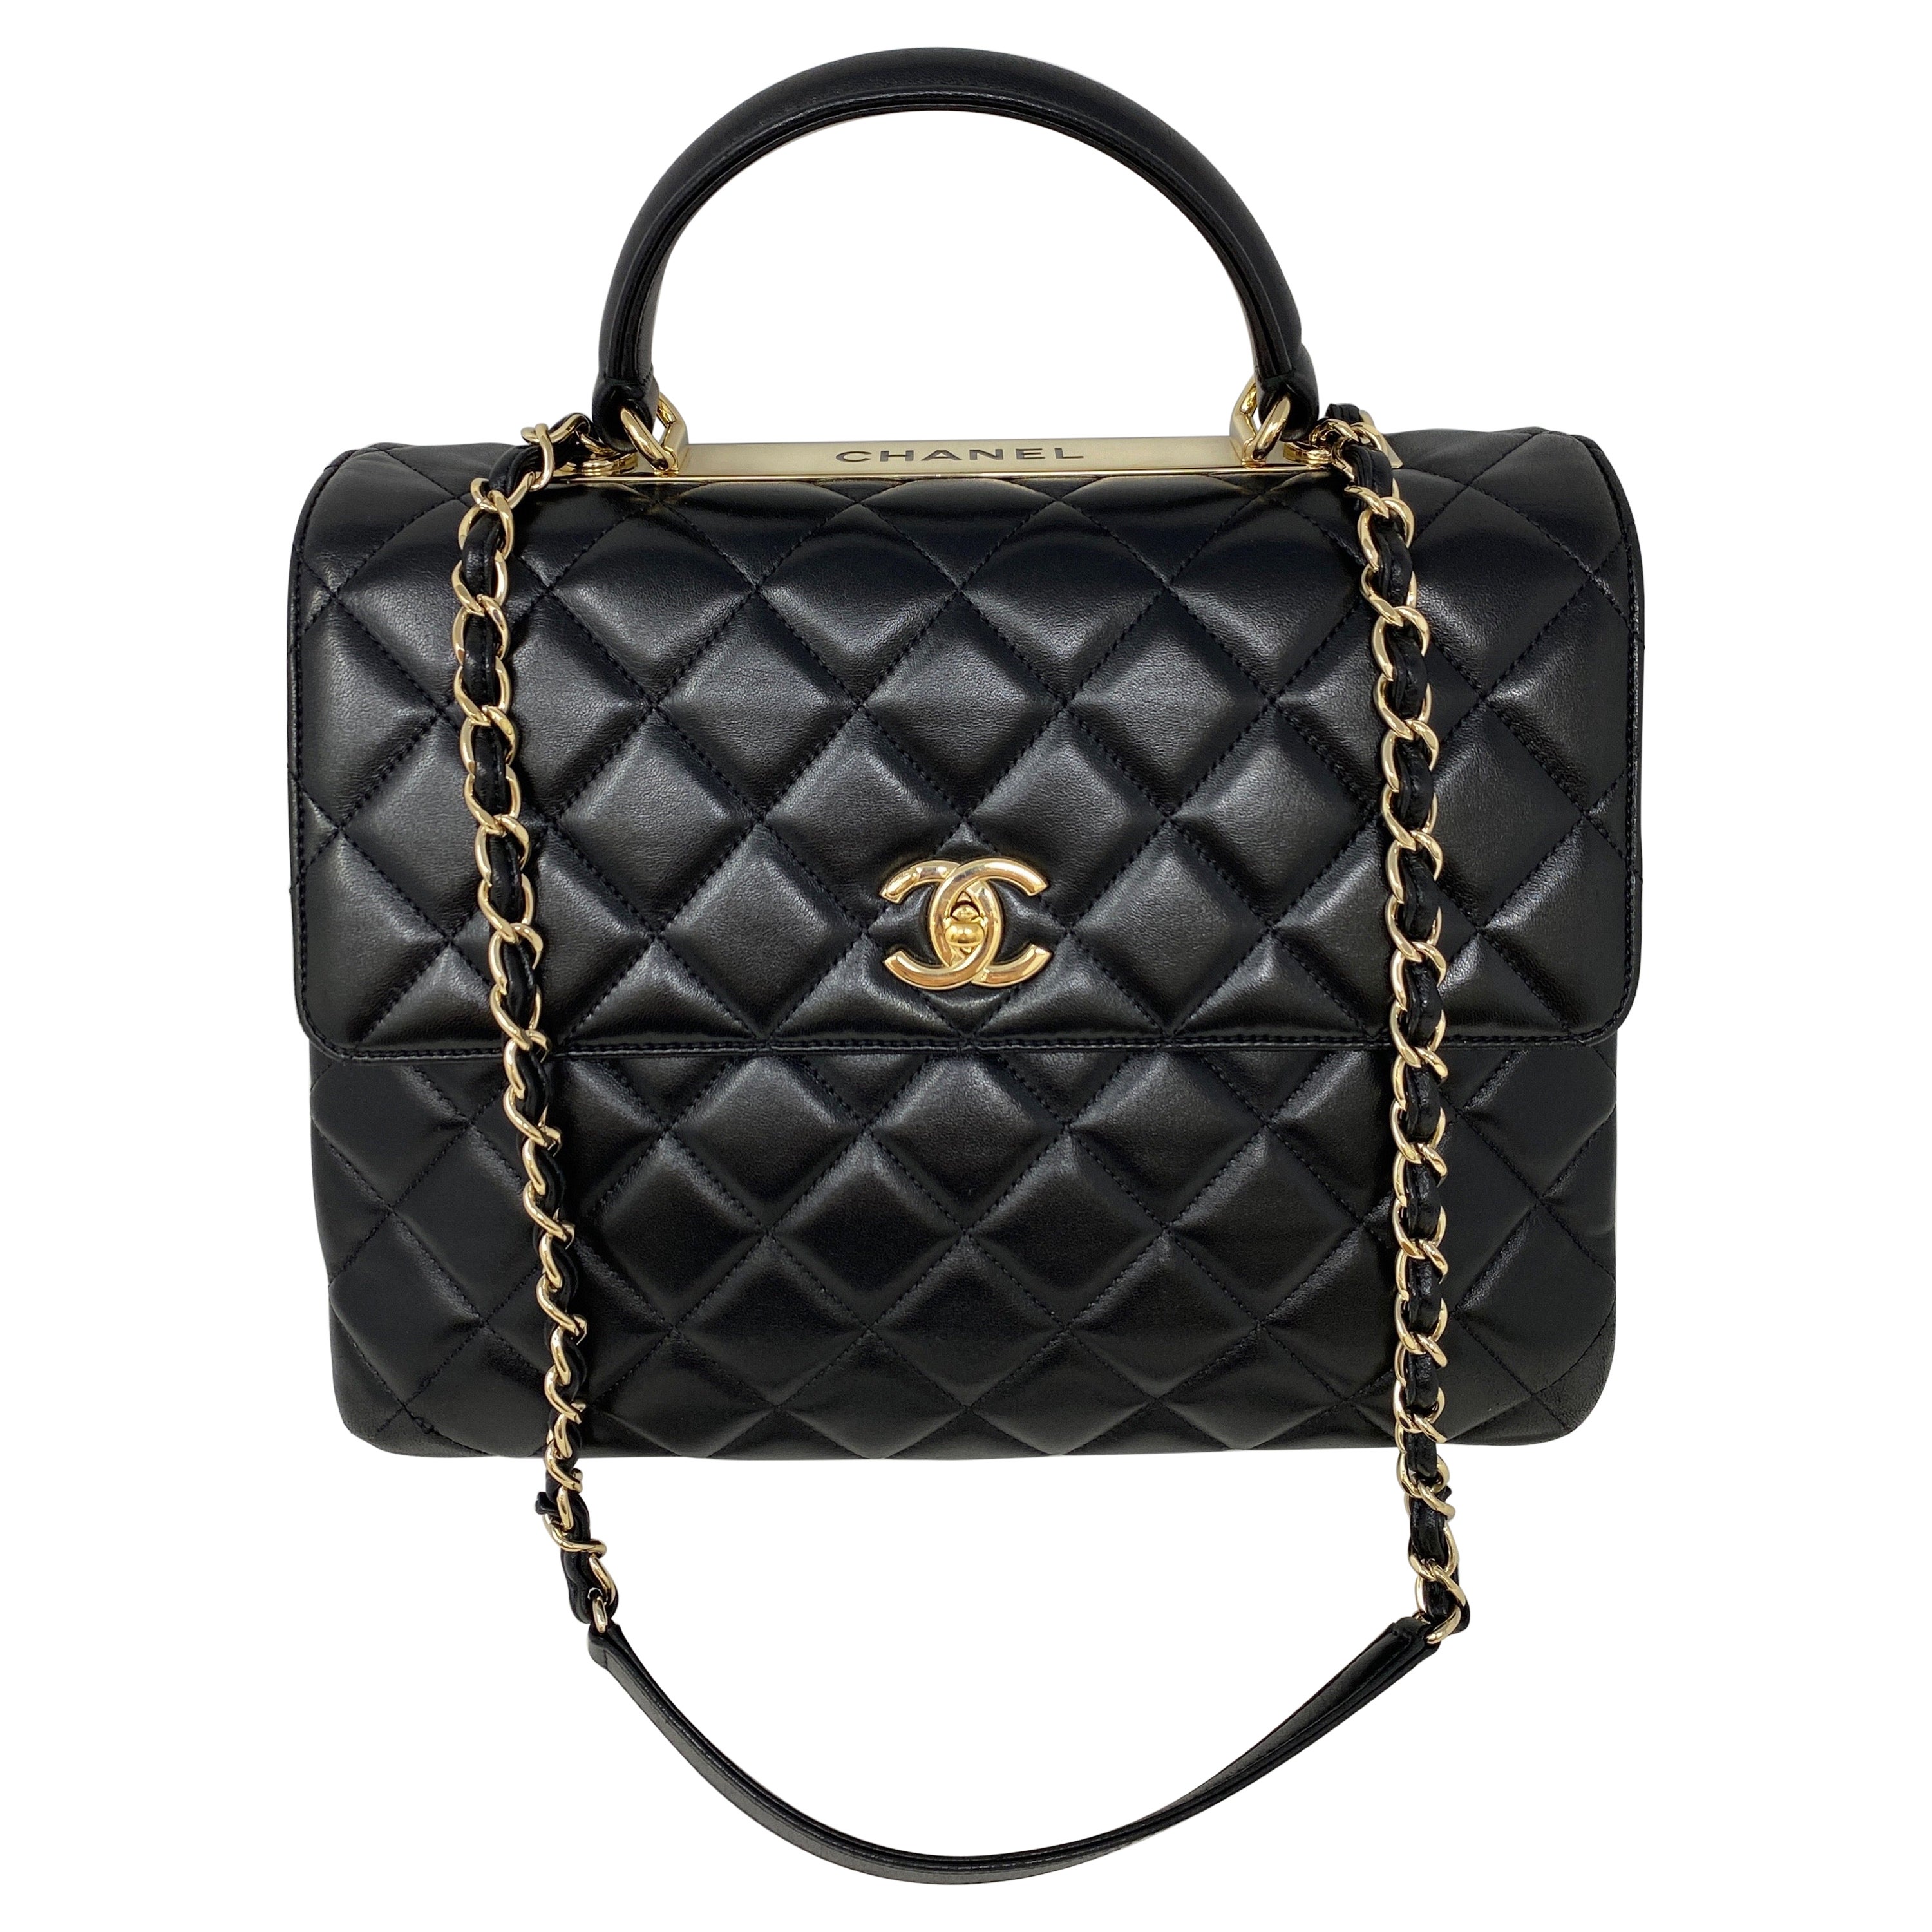 Chanel Black Large Trendy Bag 